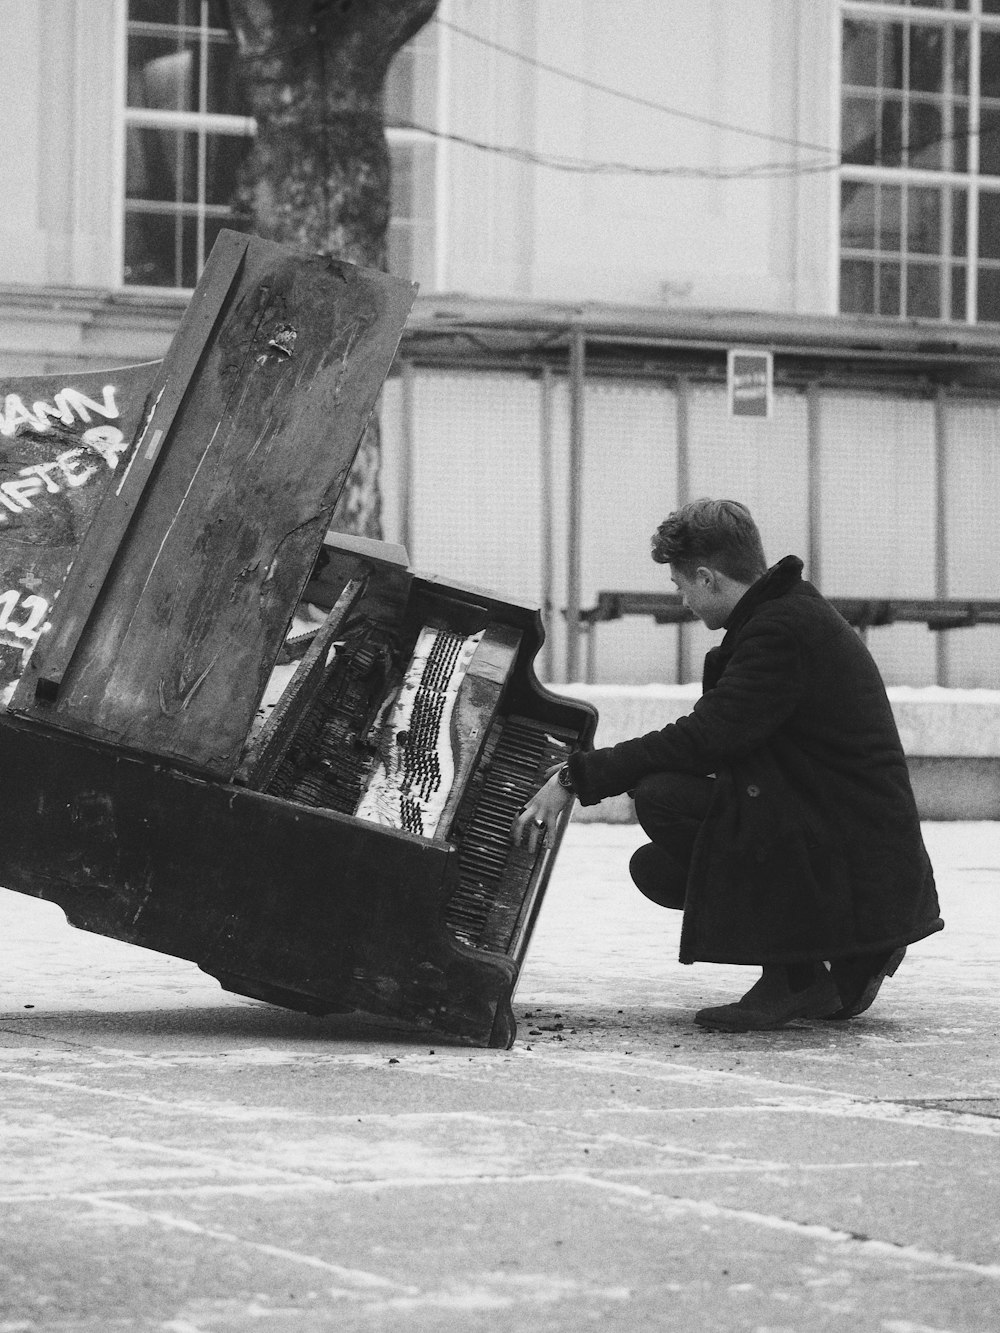 Fotografía en escala de grises de un hombre agachado frente a un piano dañado